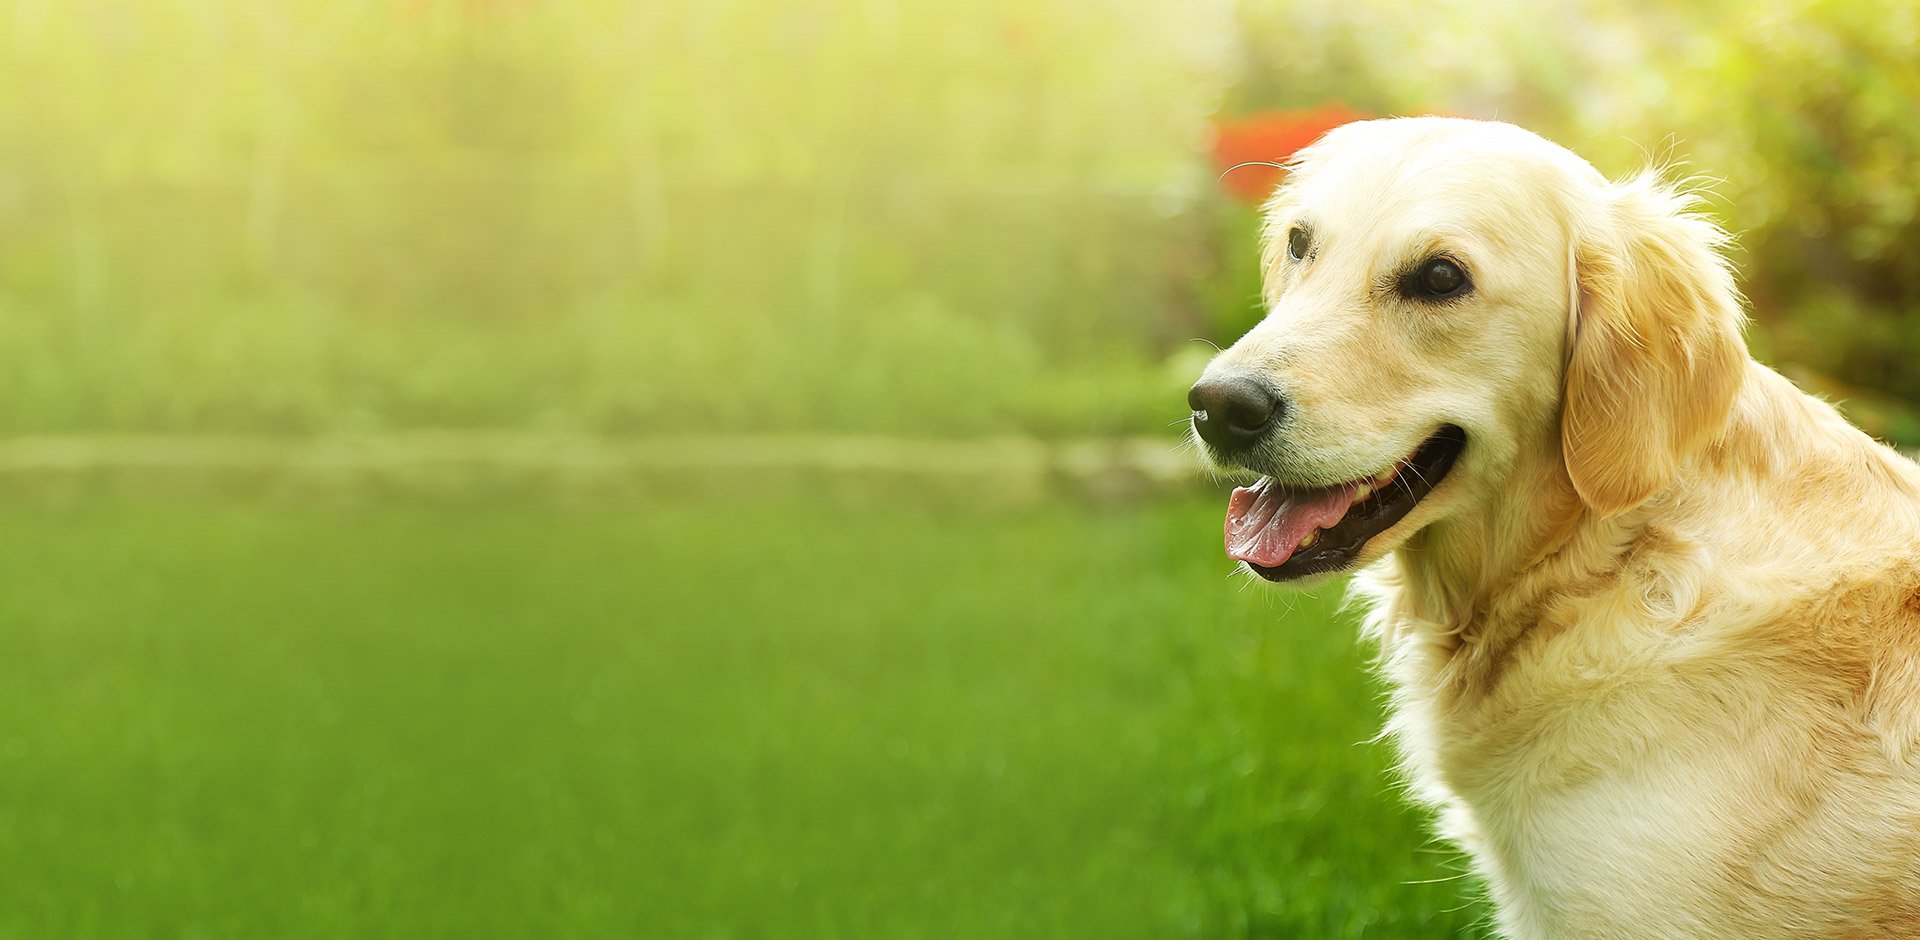 image of happy yellow adult dog